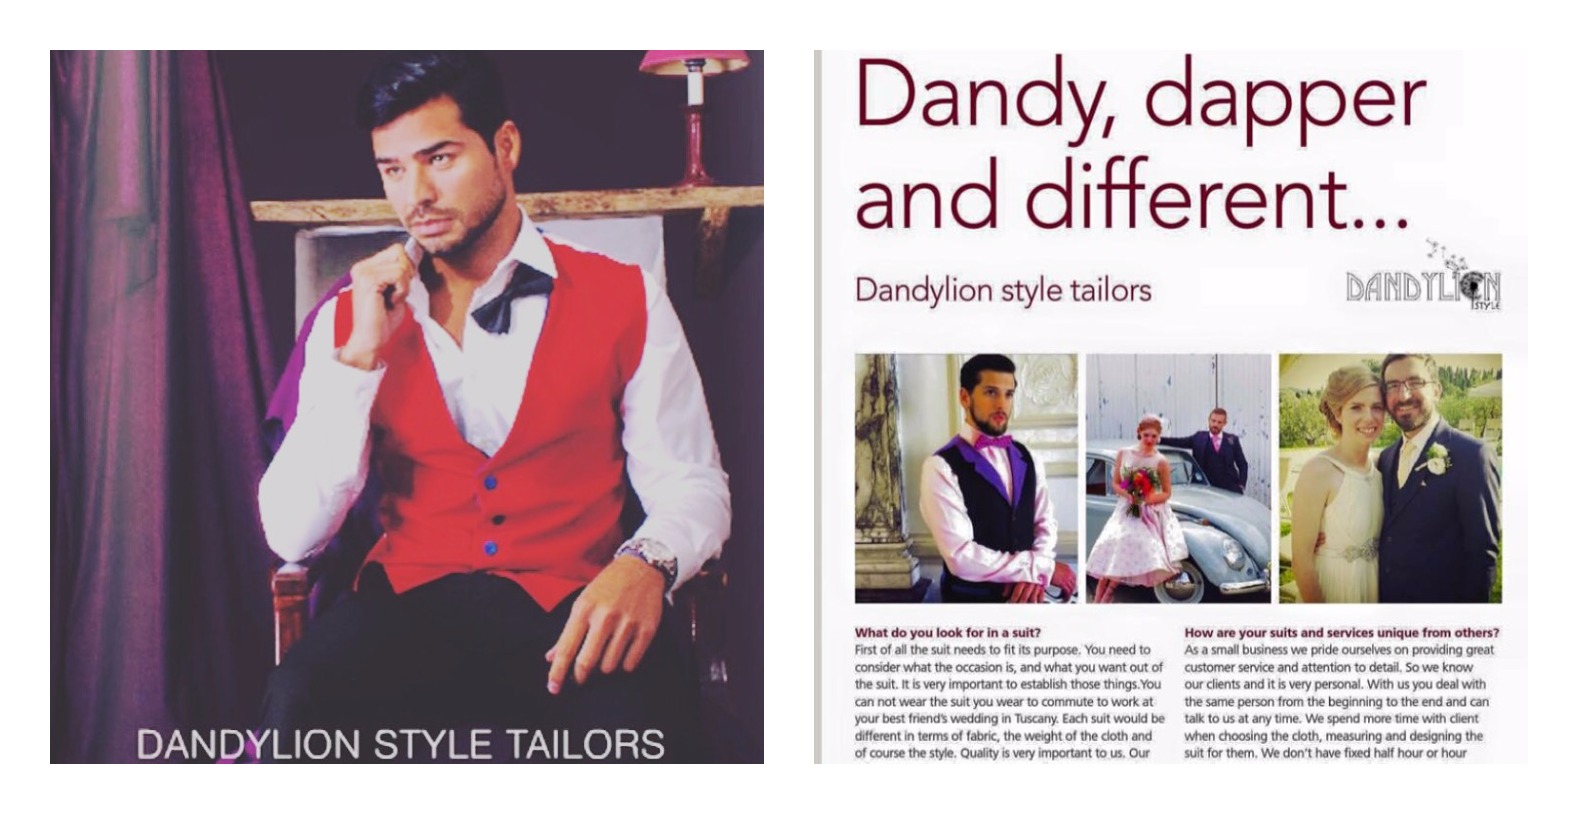 Dandylion Style Tailors – Dandy, Dapper & Different